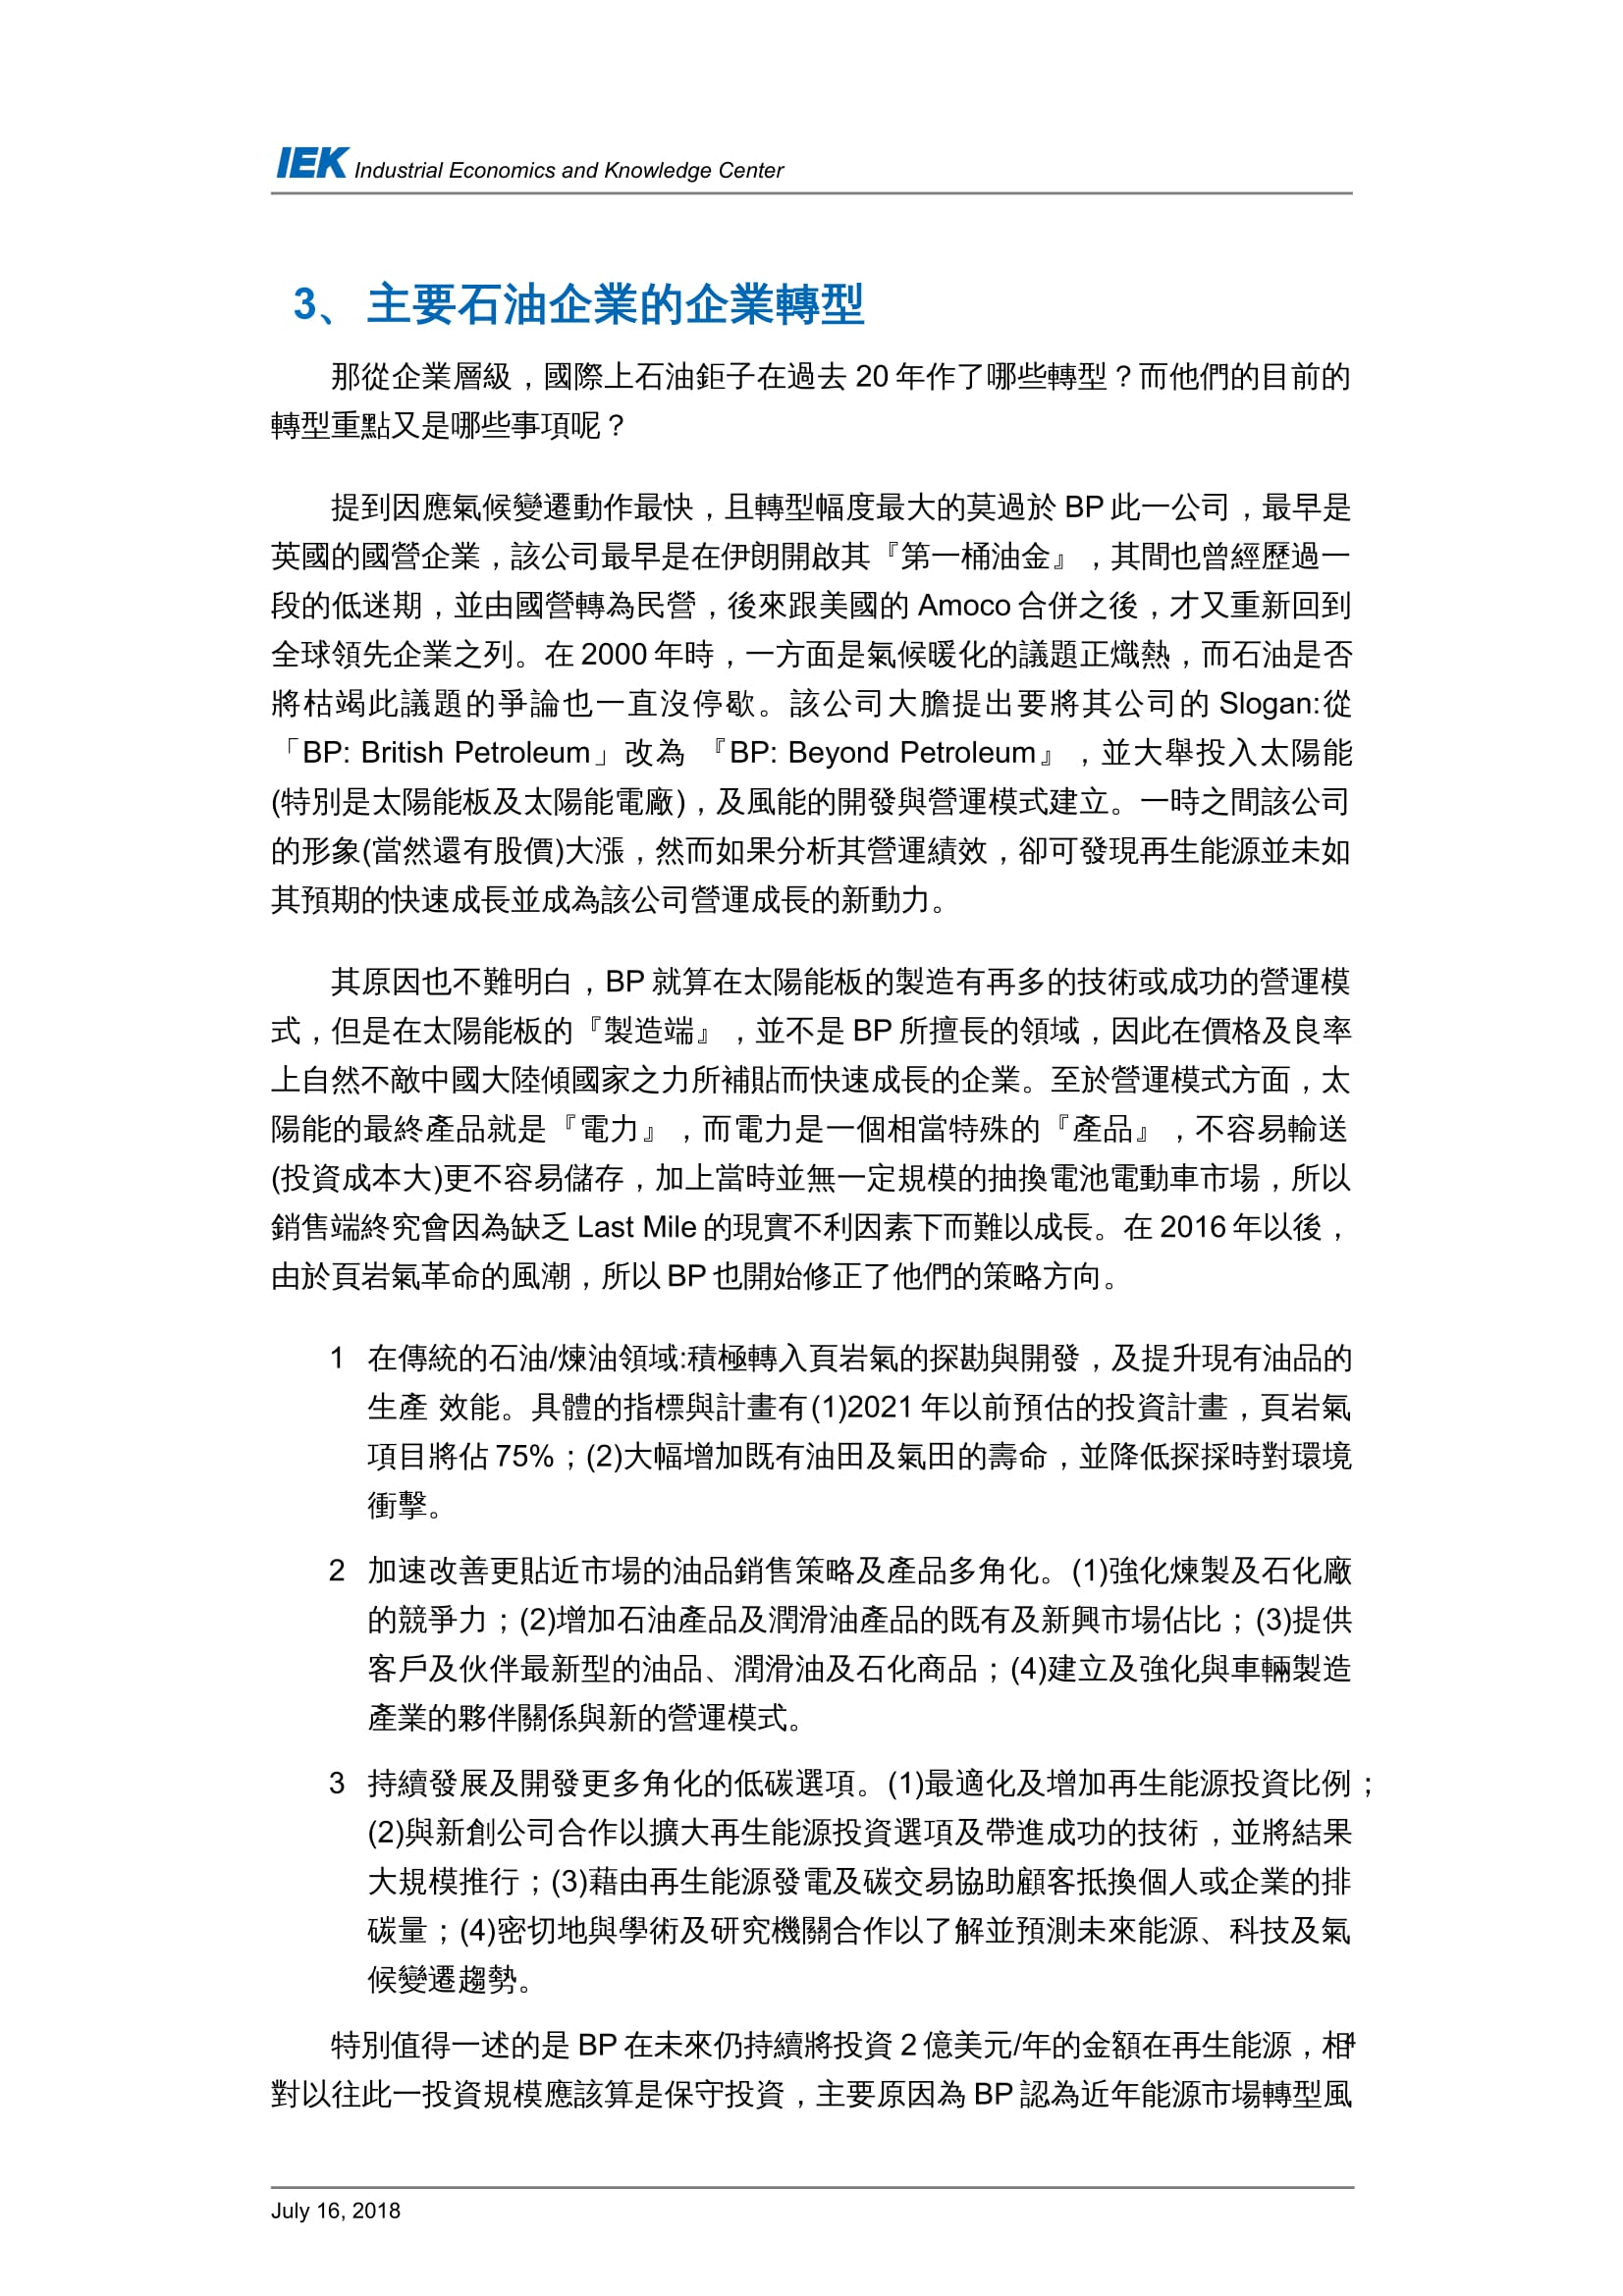 從國外石油產業的轉型看台灣中油的轉型策略_共11頁_第7頁內文(詳如下方附件)